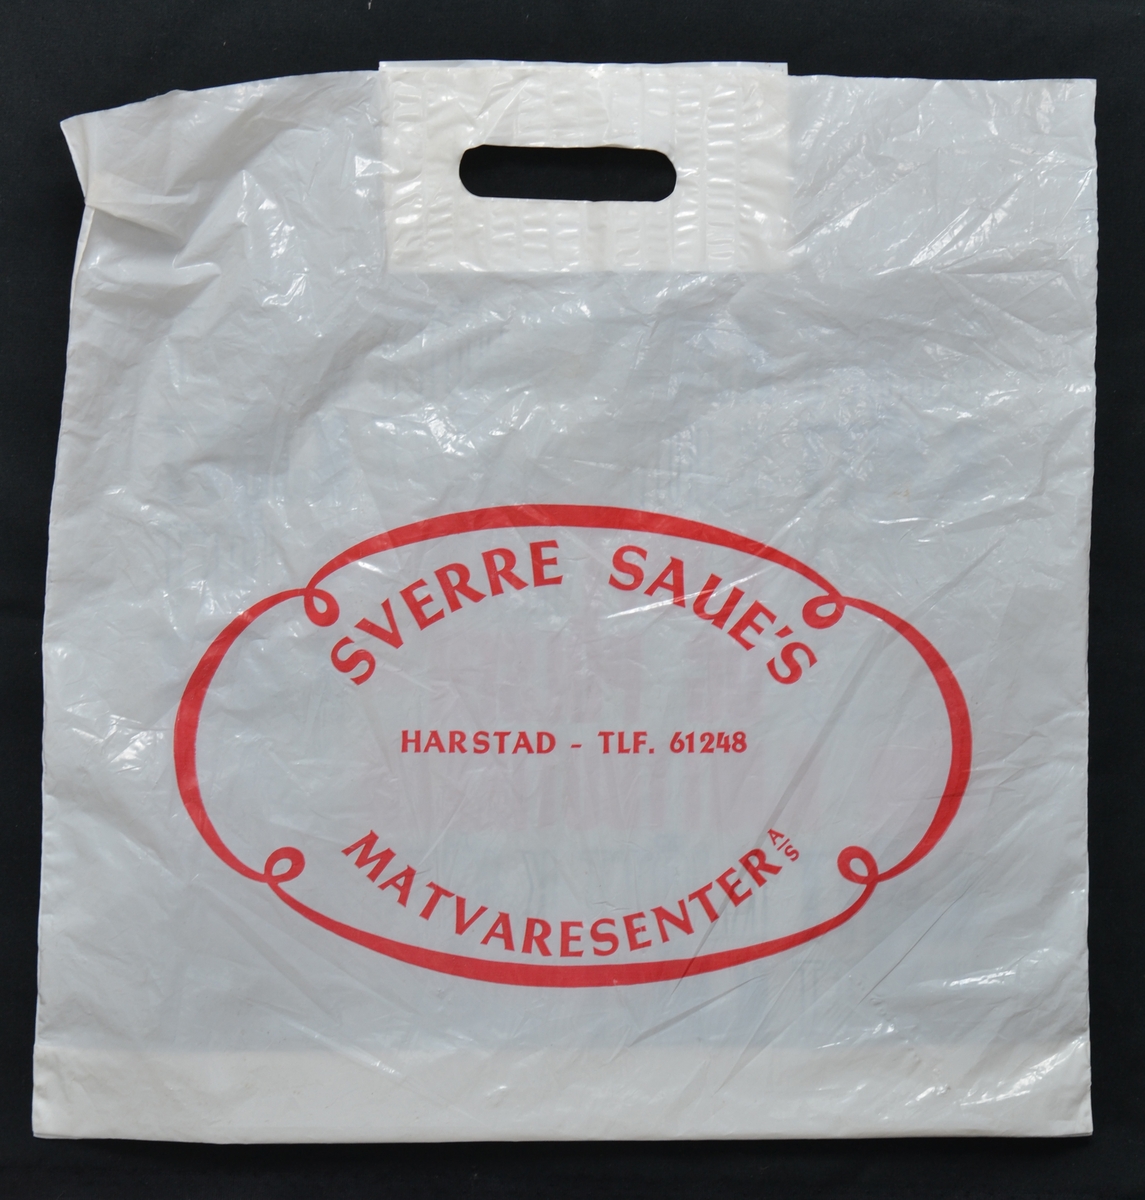 Plastpose fra Sverre Saues Matvaresenter A/S i Harstad